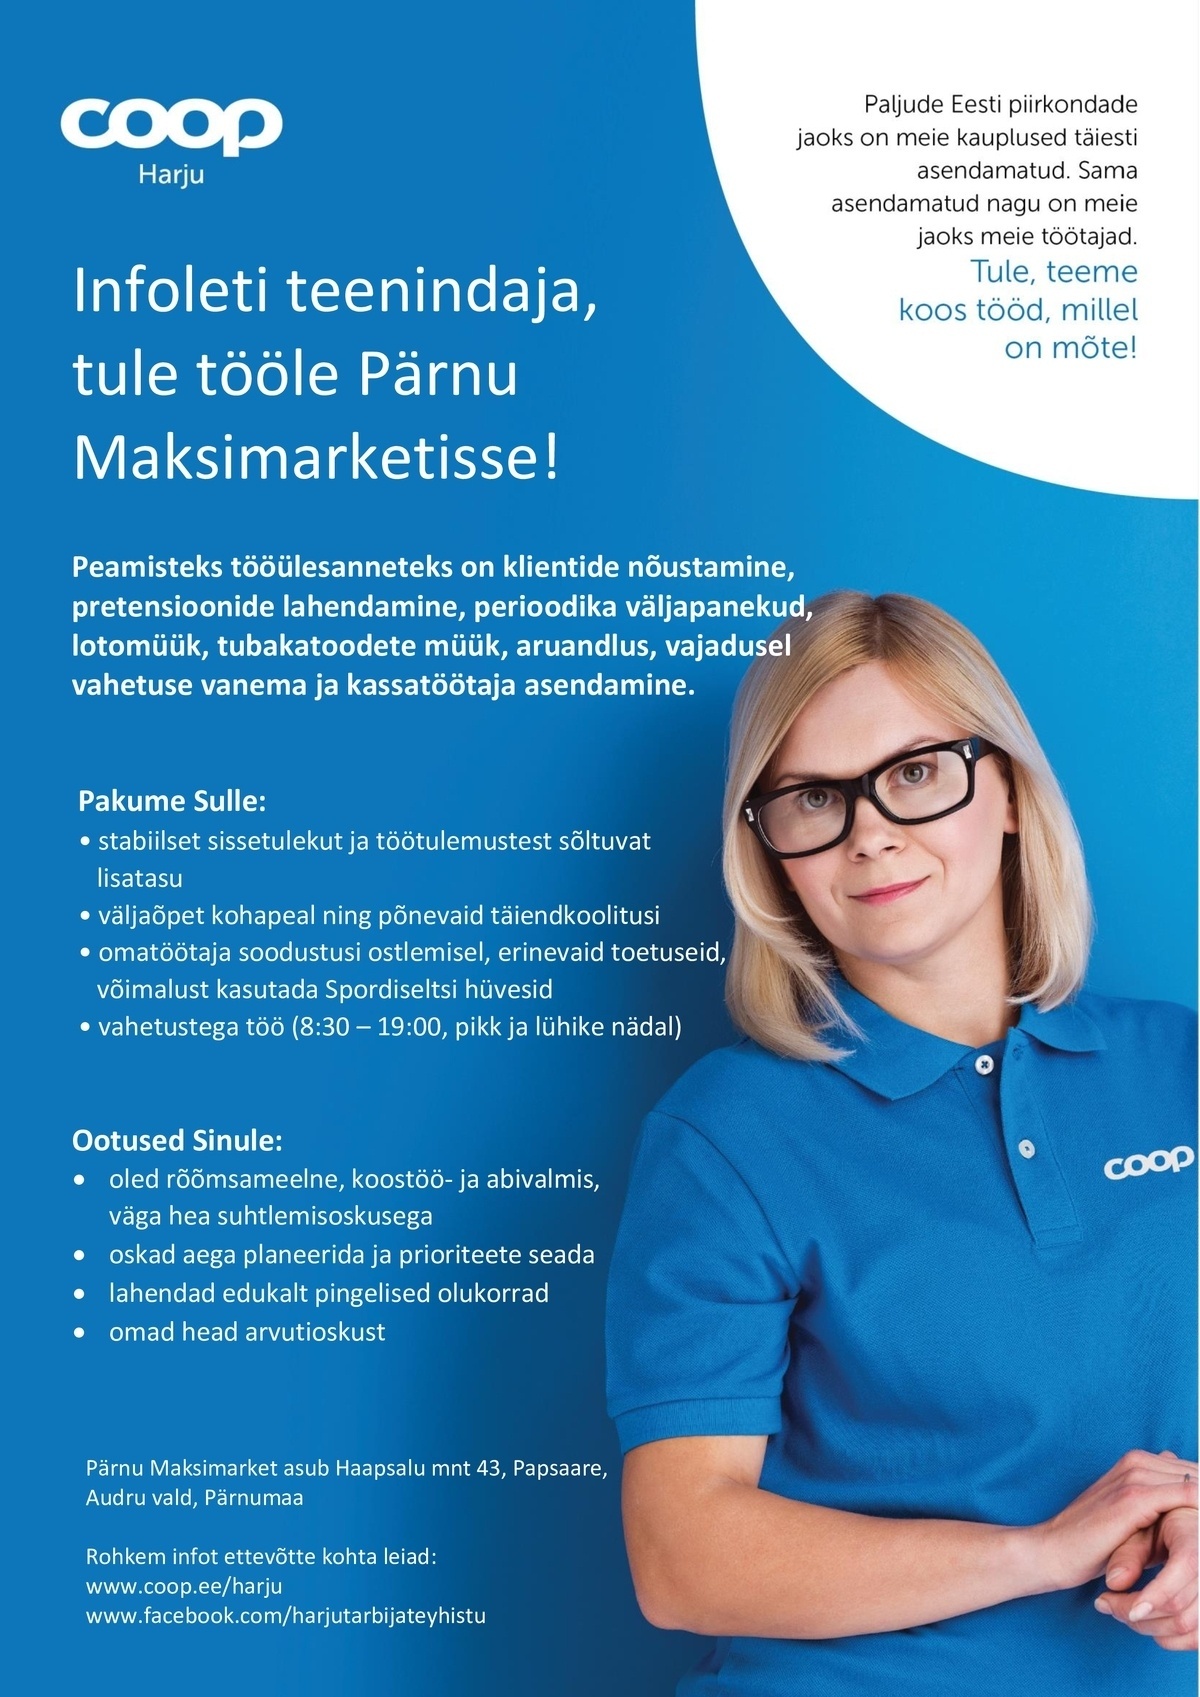 Harju Tarbijate Ühistu Infoleti teenindaja Pärnu Maksimarketisse (Coop Harju)